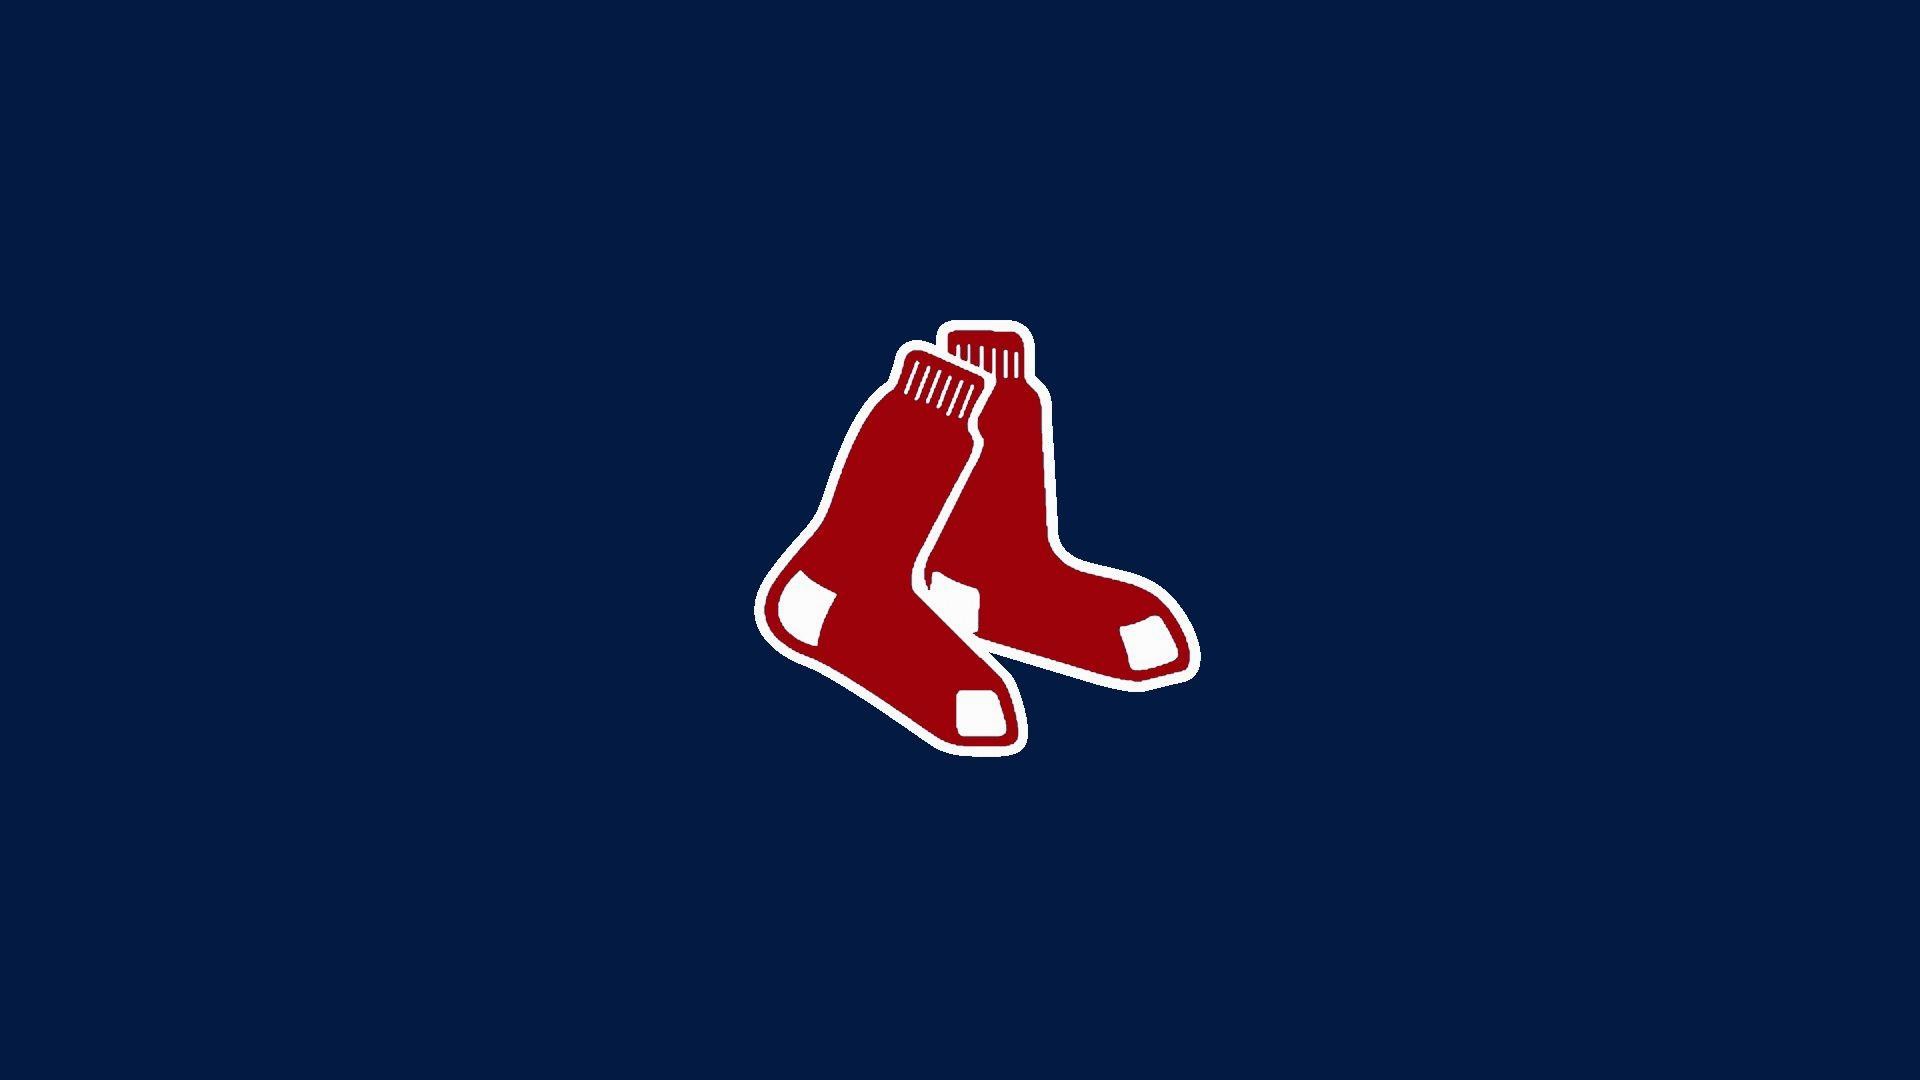 1920x1080 wallpaper.wiki-HD-Boston-Red-Sox-Logo-Wallpaper-